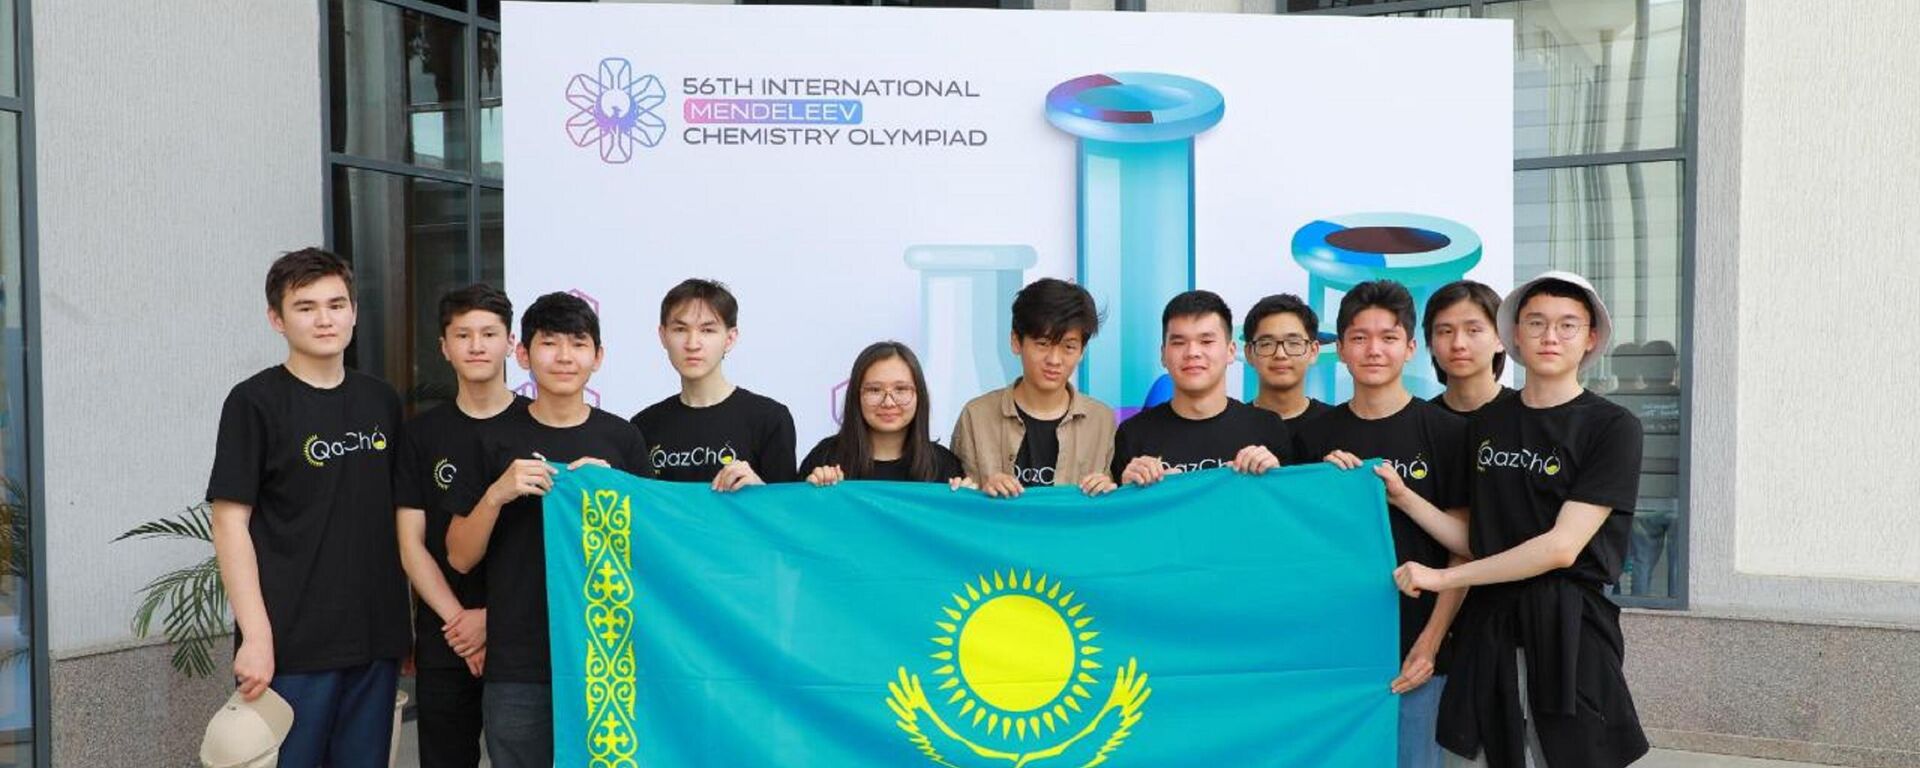 Казахстанские школьники завоевали 8 медалей на Менделеевской олимпиаде по химии в Ташкенте - Sputnik Казахстан, 1920, 16.05.2022